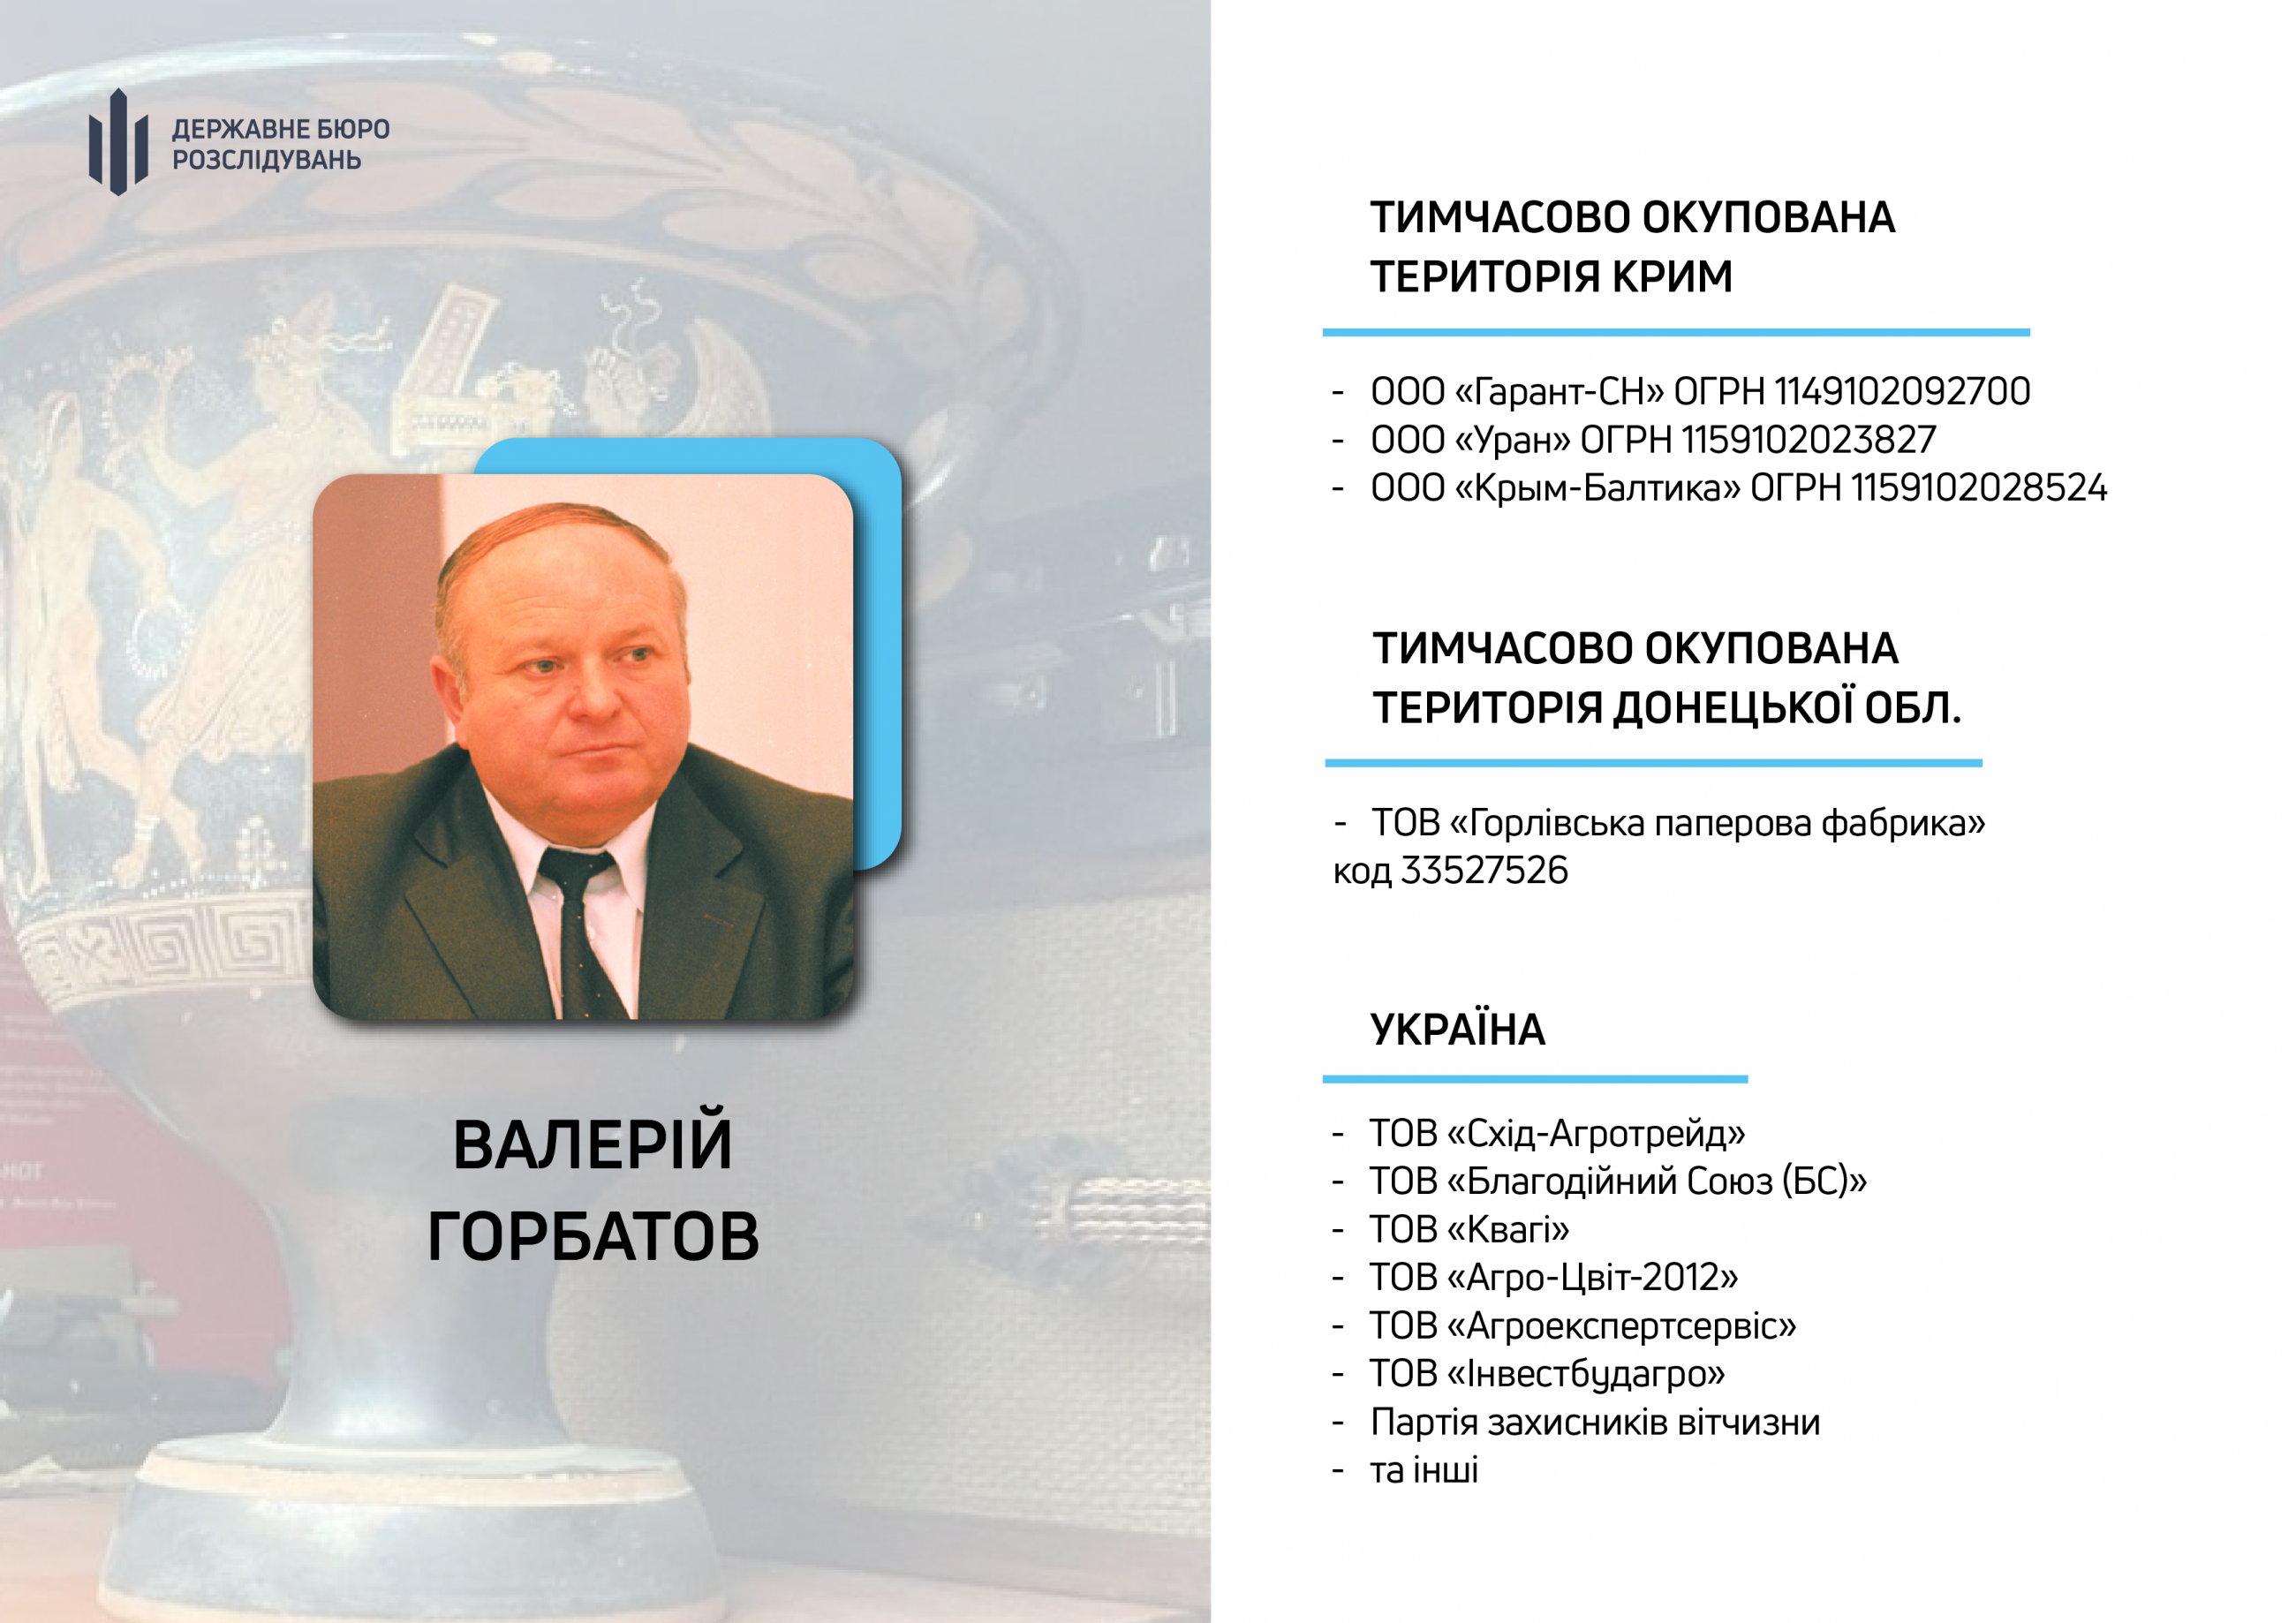 Суд арестовал имущество бизнес-партнера гауляйтера Крыма. Он был депутатом Рады